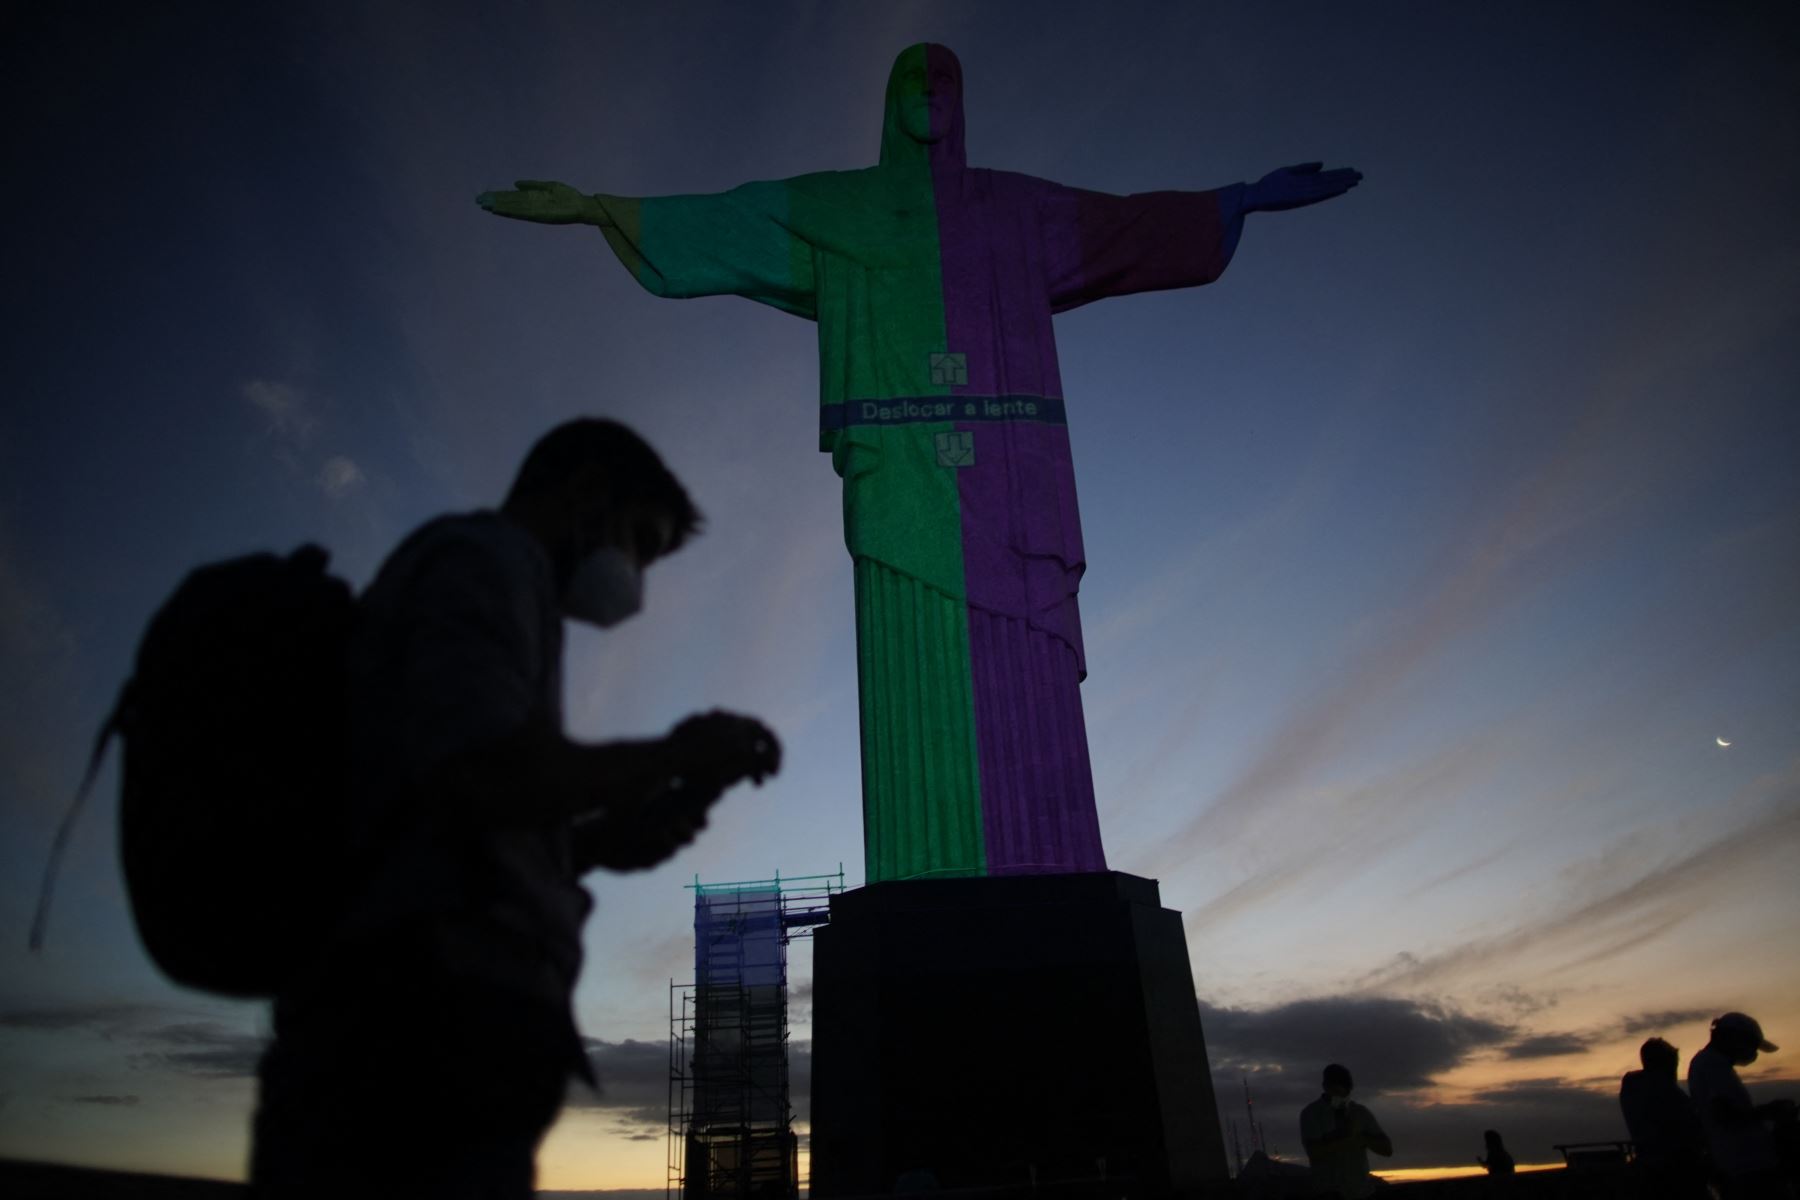 La estatua del Cristo Redentor se ve preparada para ser iluminada con los colores de la bandera brasileña y flechas olímpicas para marcar los 100 días hasta los Juegos Olímpicos de Tokio 2020 en Río de Janeiro, Brasil.
Foto: AFP